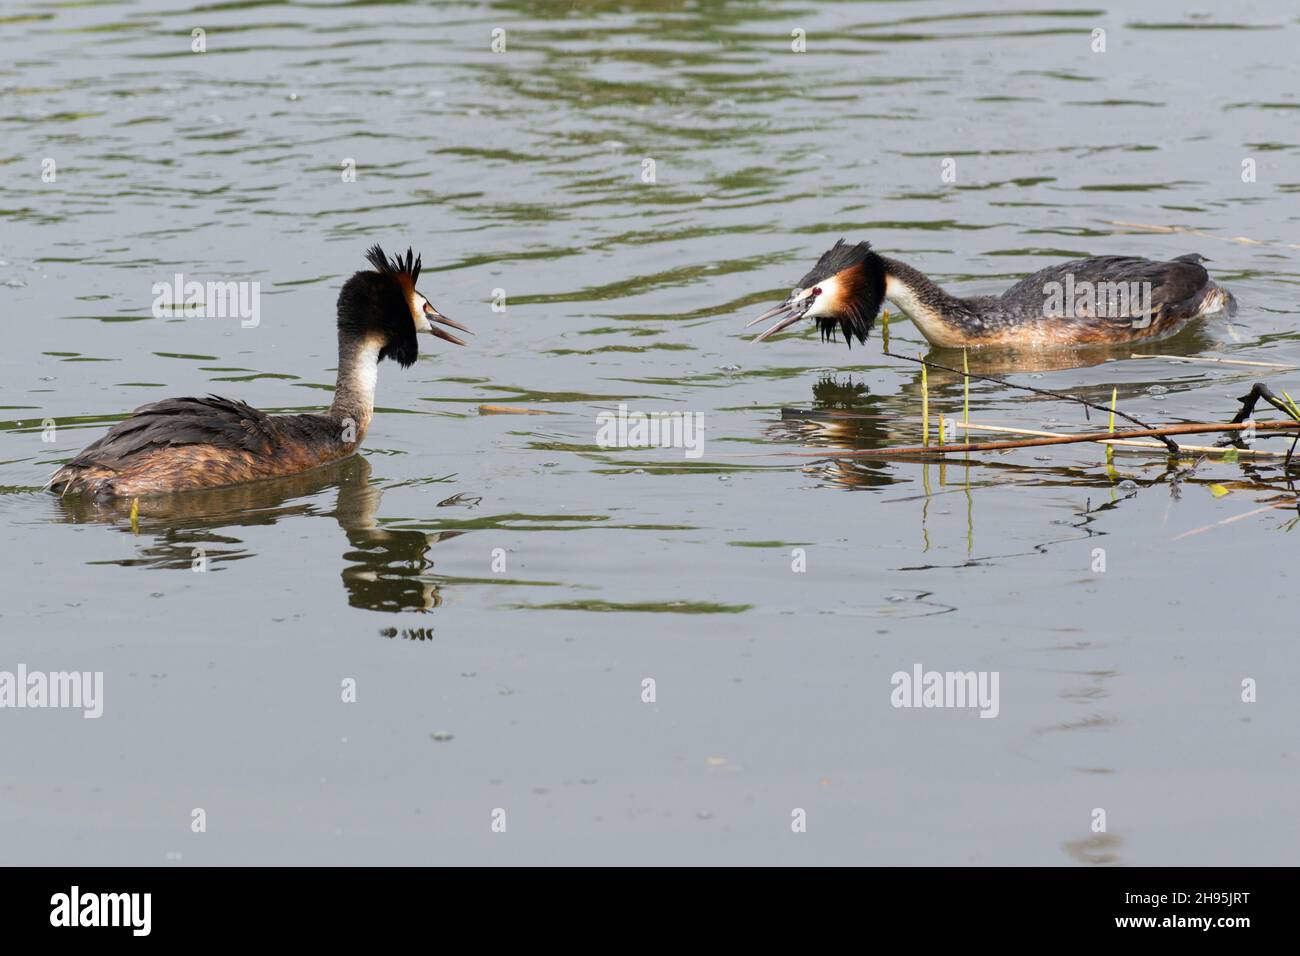 Grande avidità crestata, (Podiceps critica), due maschi rivali in disputa territoriale, sul lago, bassa Sassonia, Germania Foto Stock